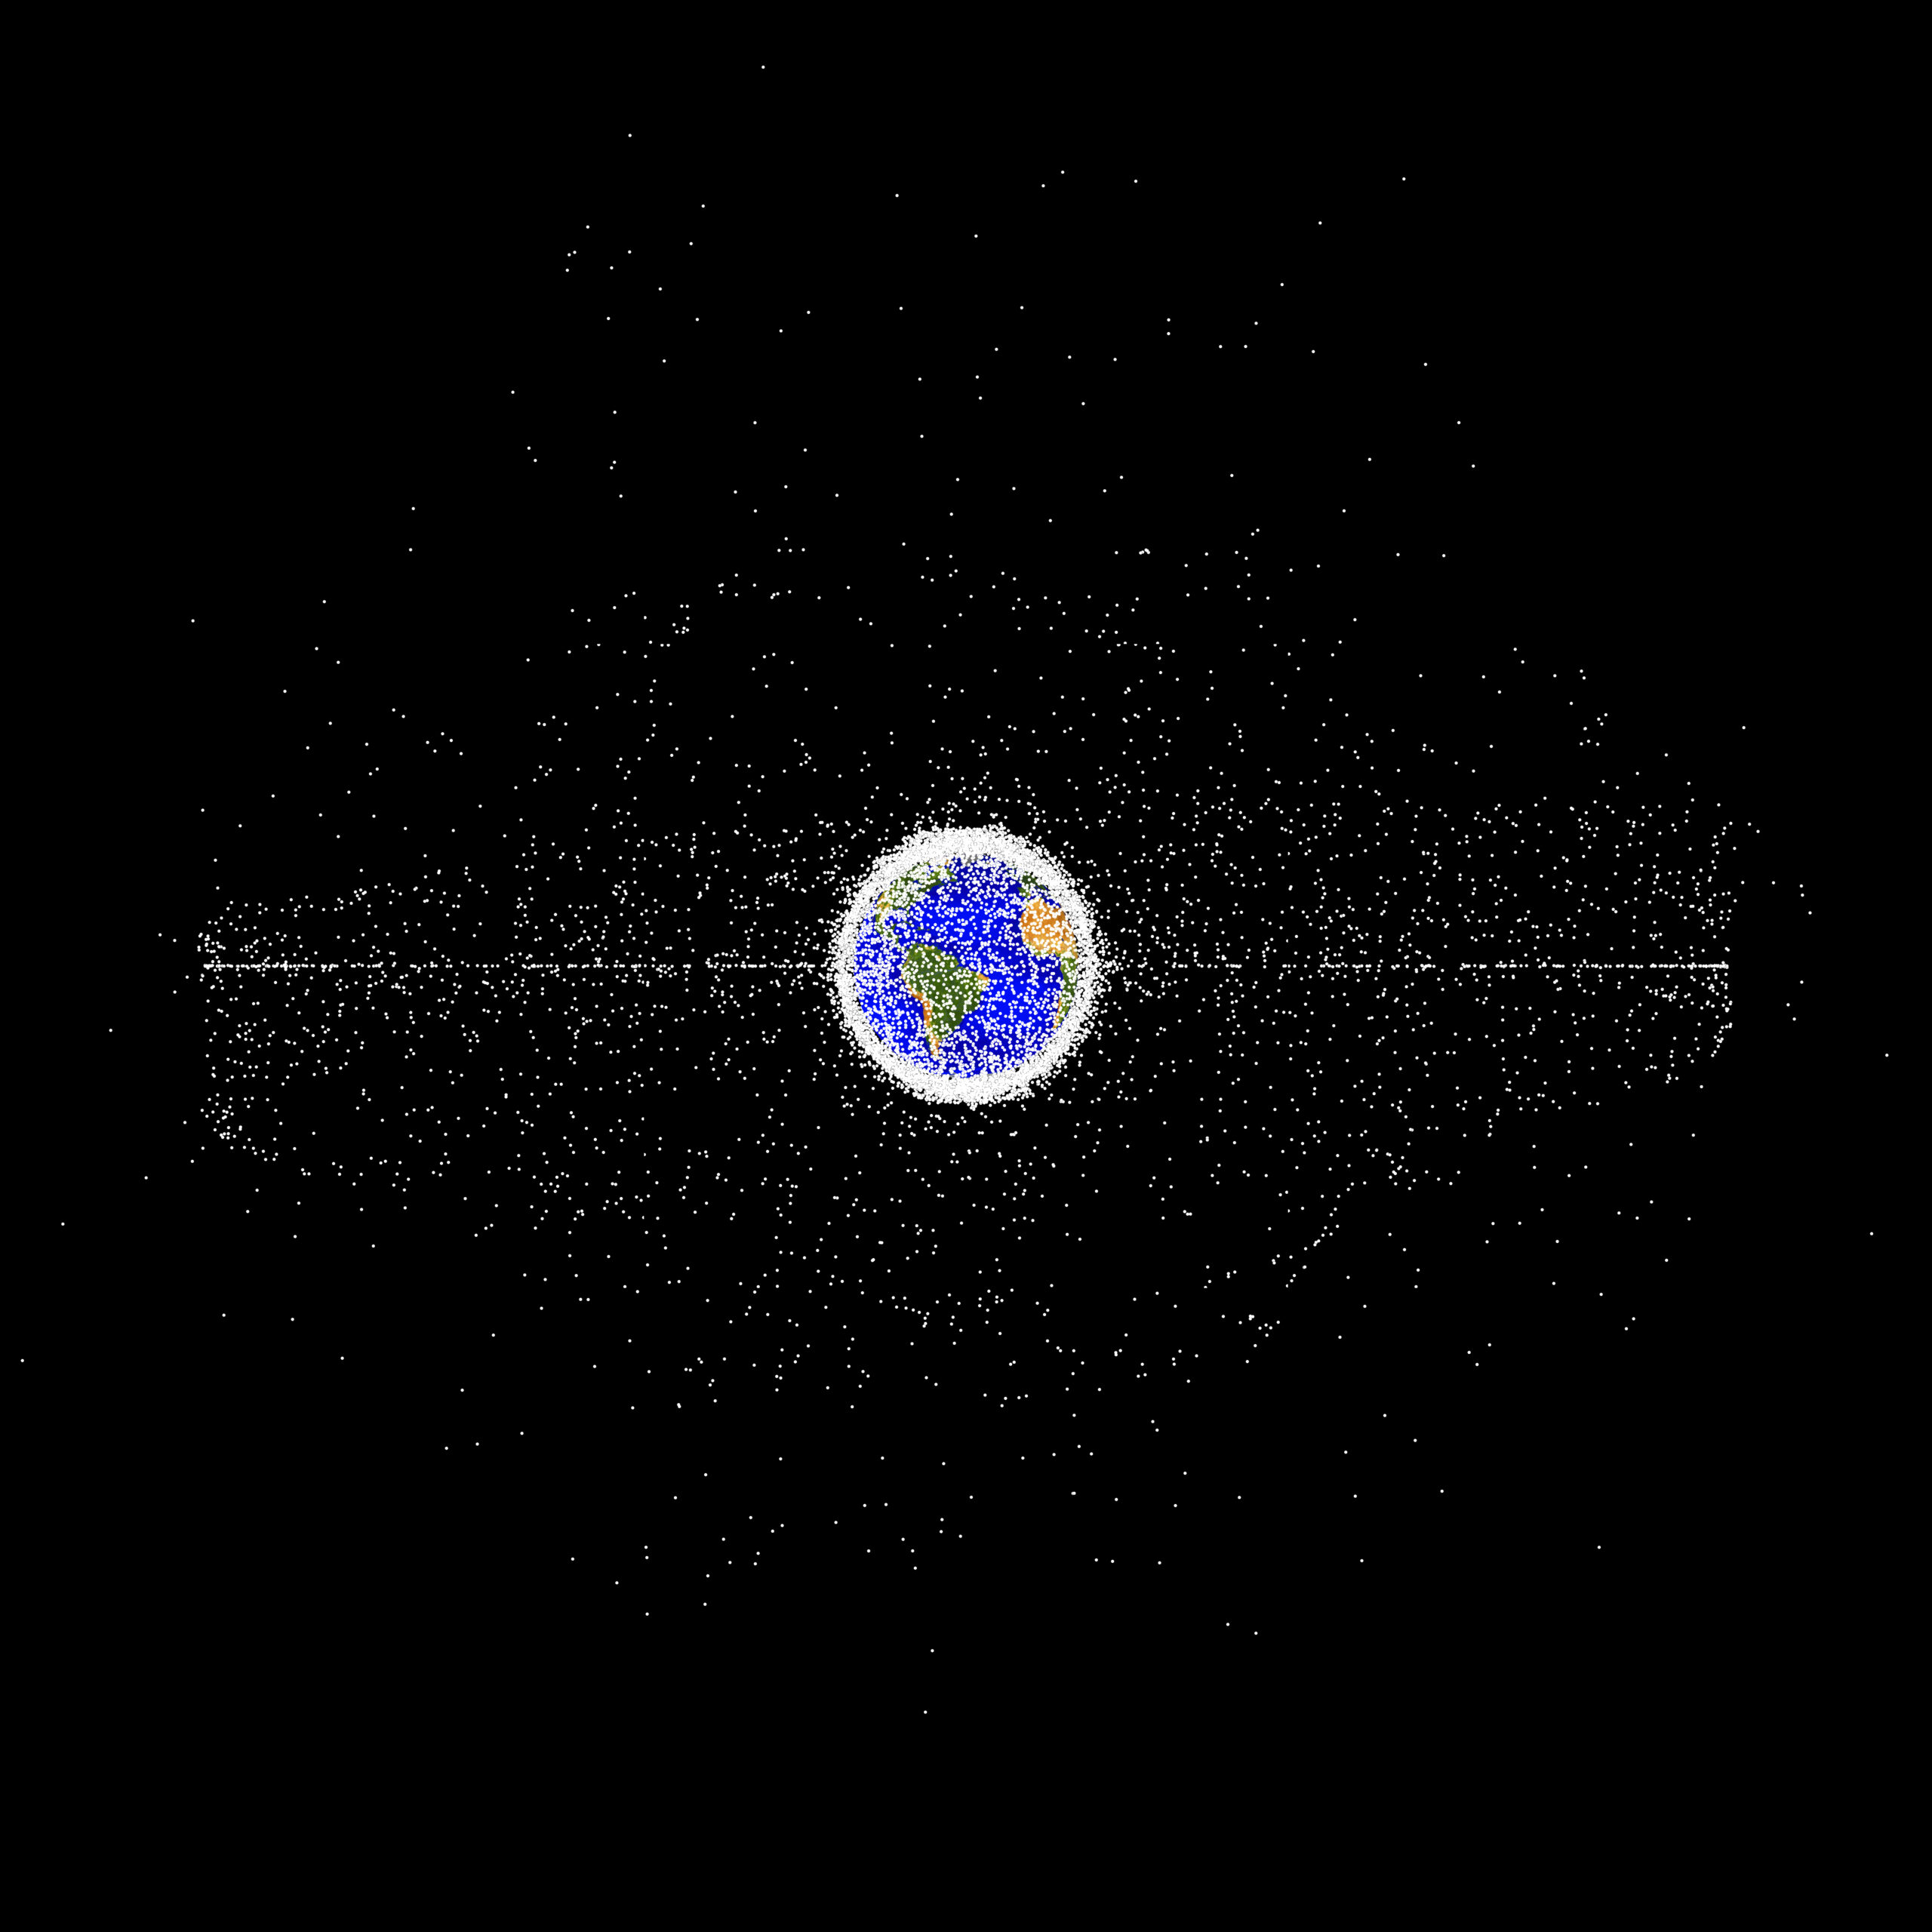 Ilustração do planeta Terra e do espaço sideral, com pontos brancos em sua órbita, a uma maior distância. (Créditos: NASA ODPO)